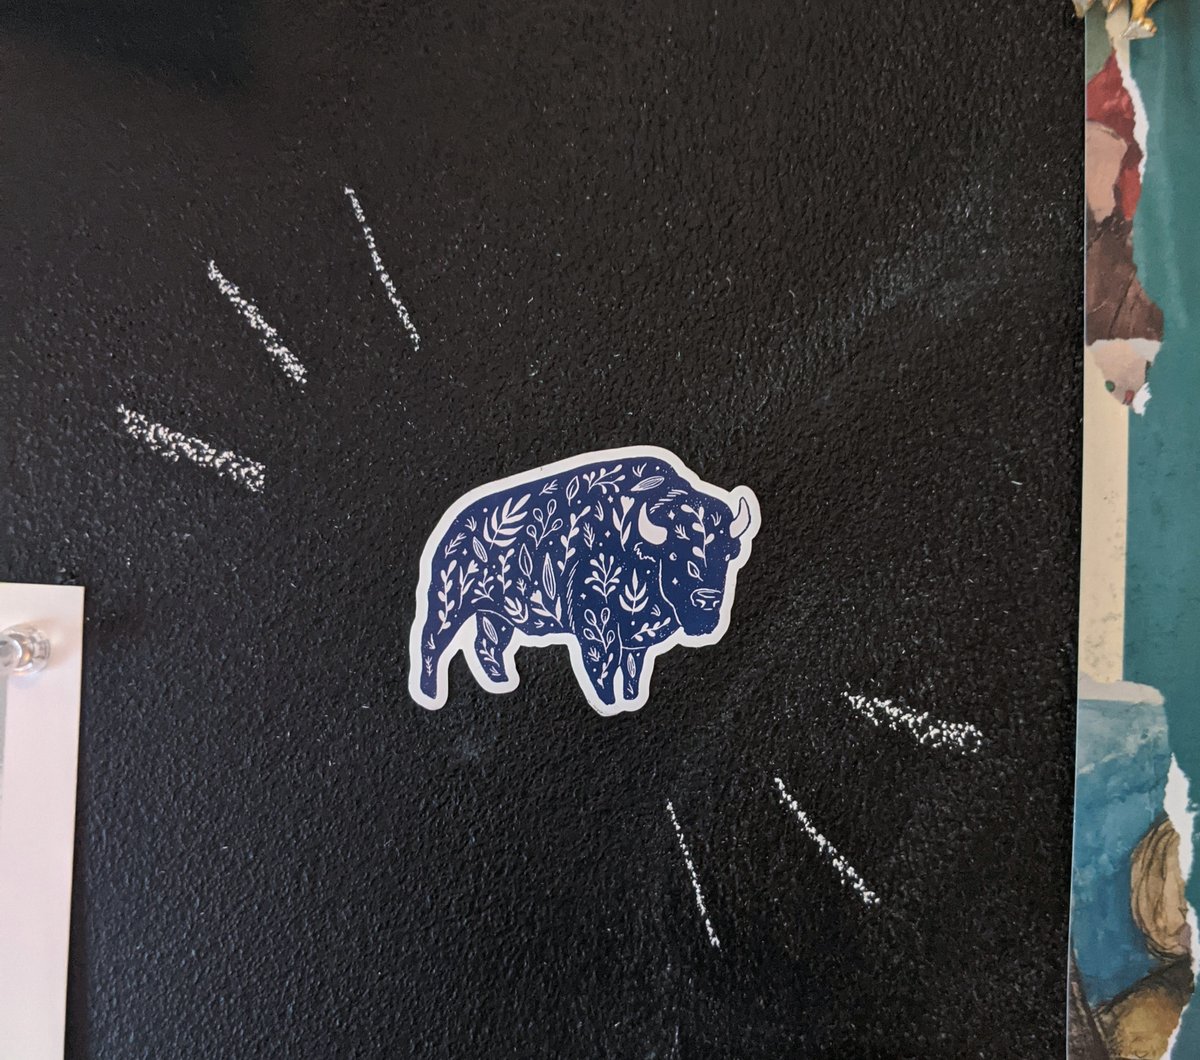 Image of Floral bison magnet